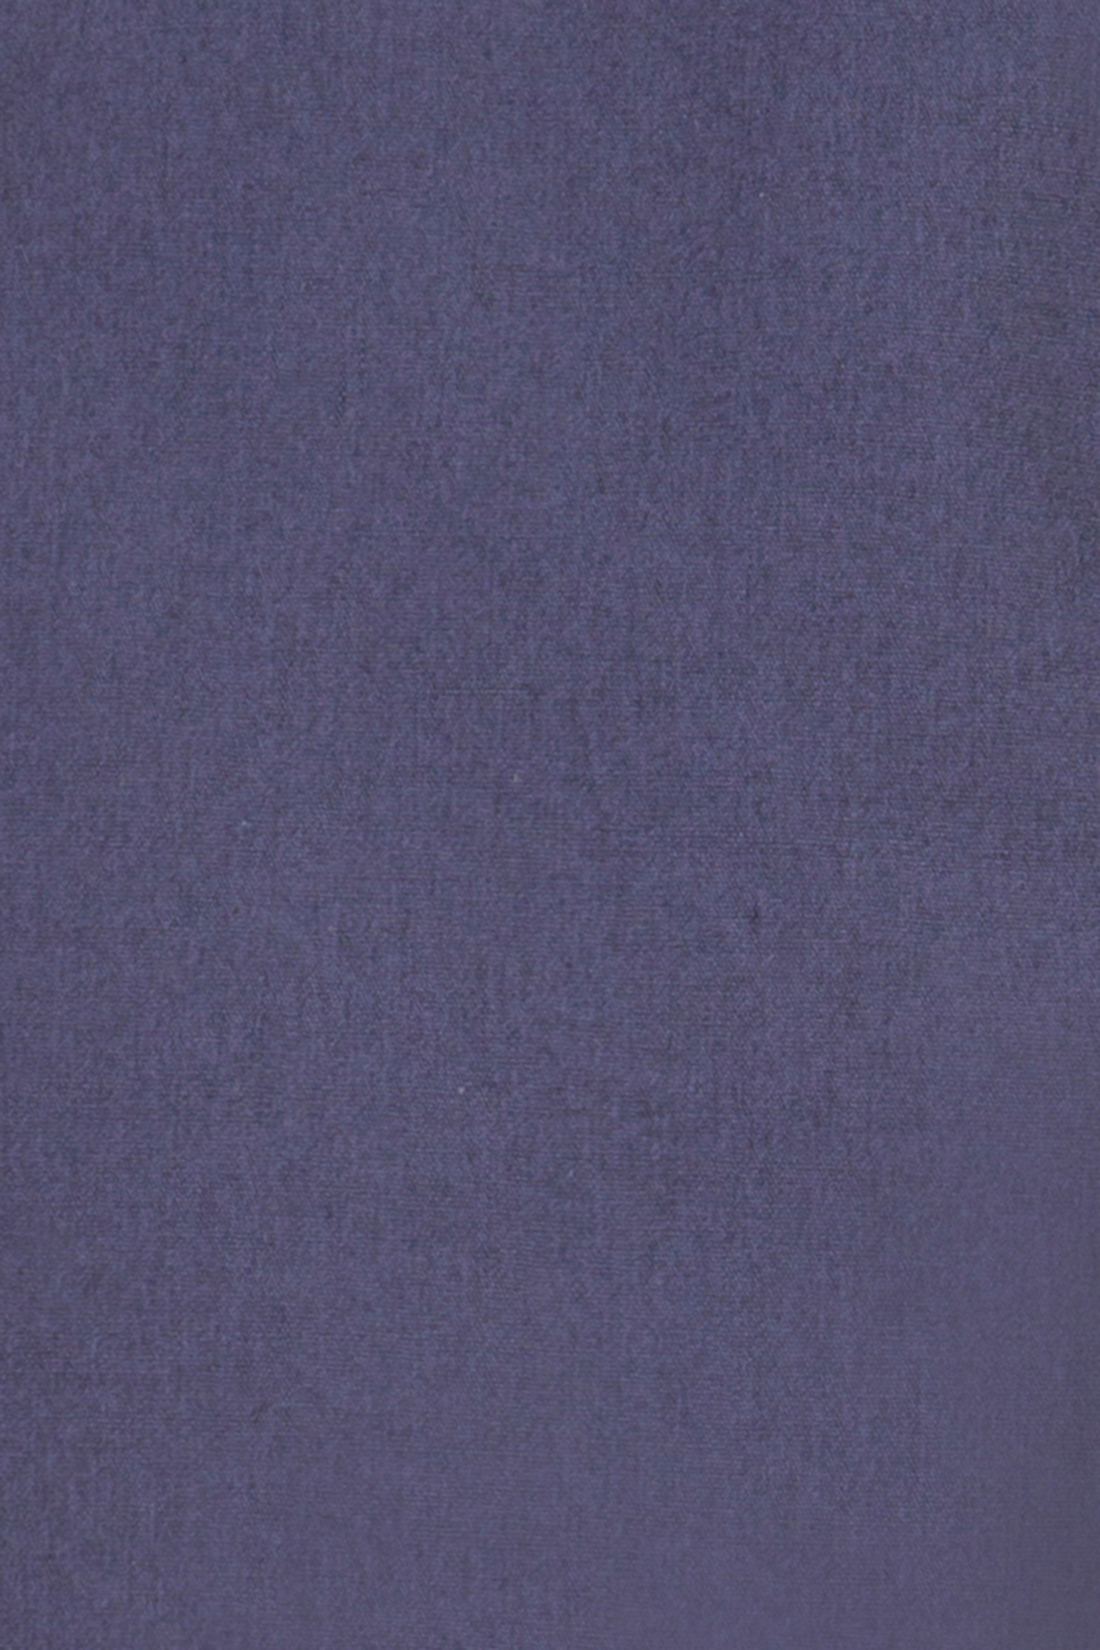 Длинные шорты из хлопка (арт. baon B827008), размер 36, цвет синий Длинные шорты из хлопка (арт. baon B827008) - фото 4